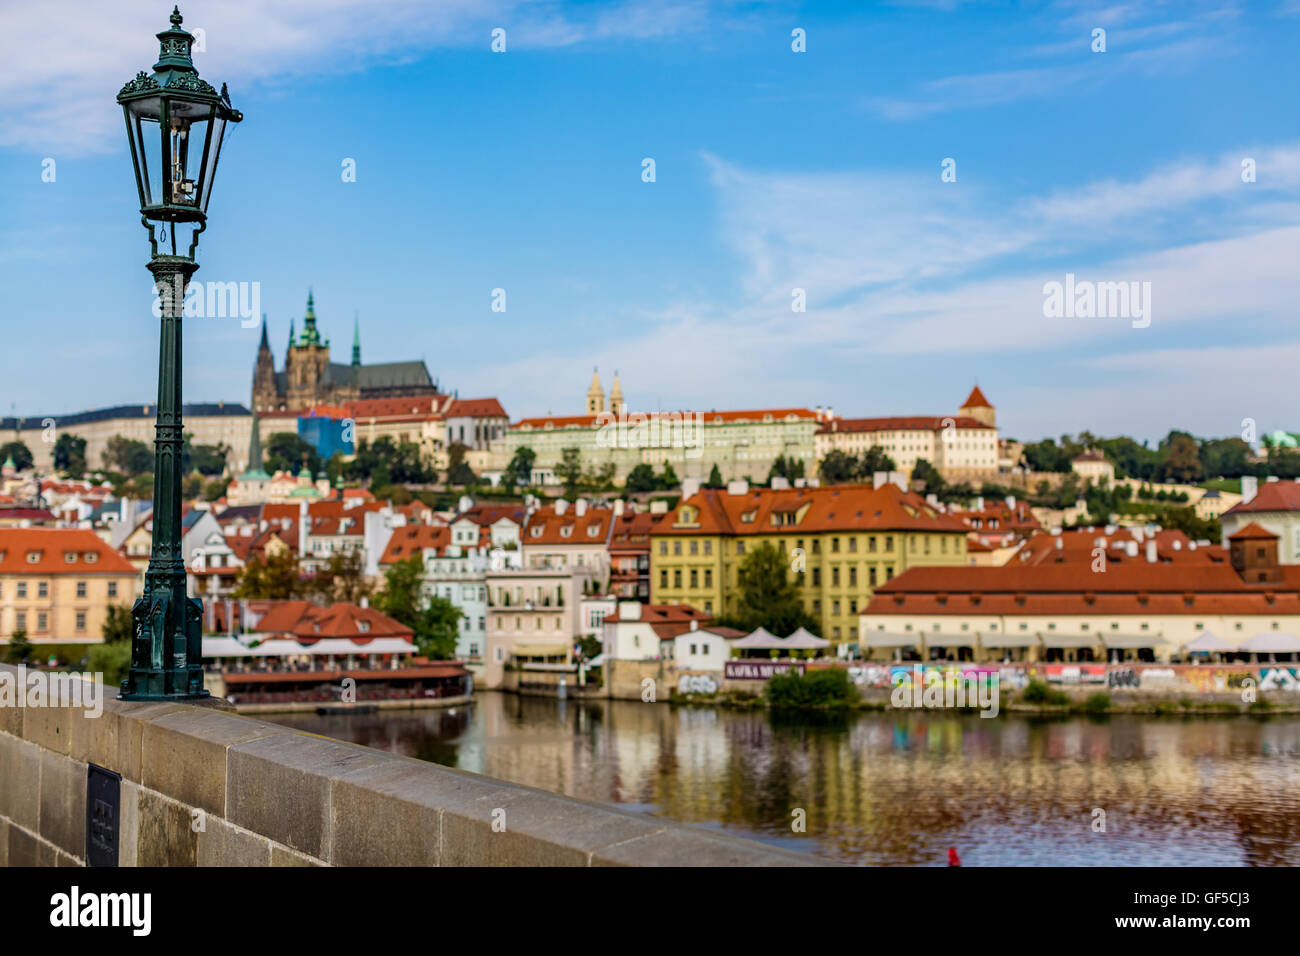 Ver el colorido de la ciudad vieja y el castillo de Praga con el río Vltava, República Checa Foto de stock